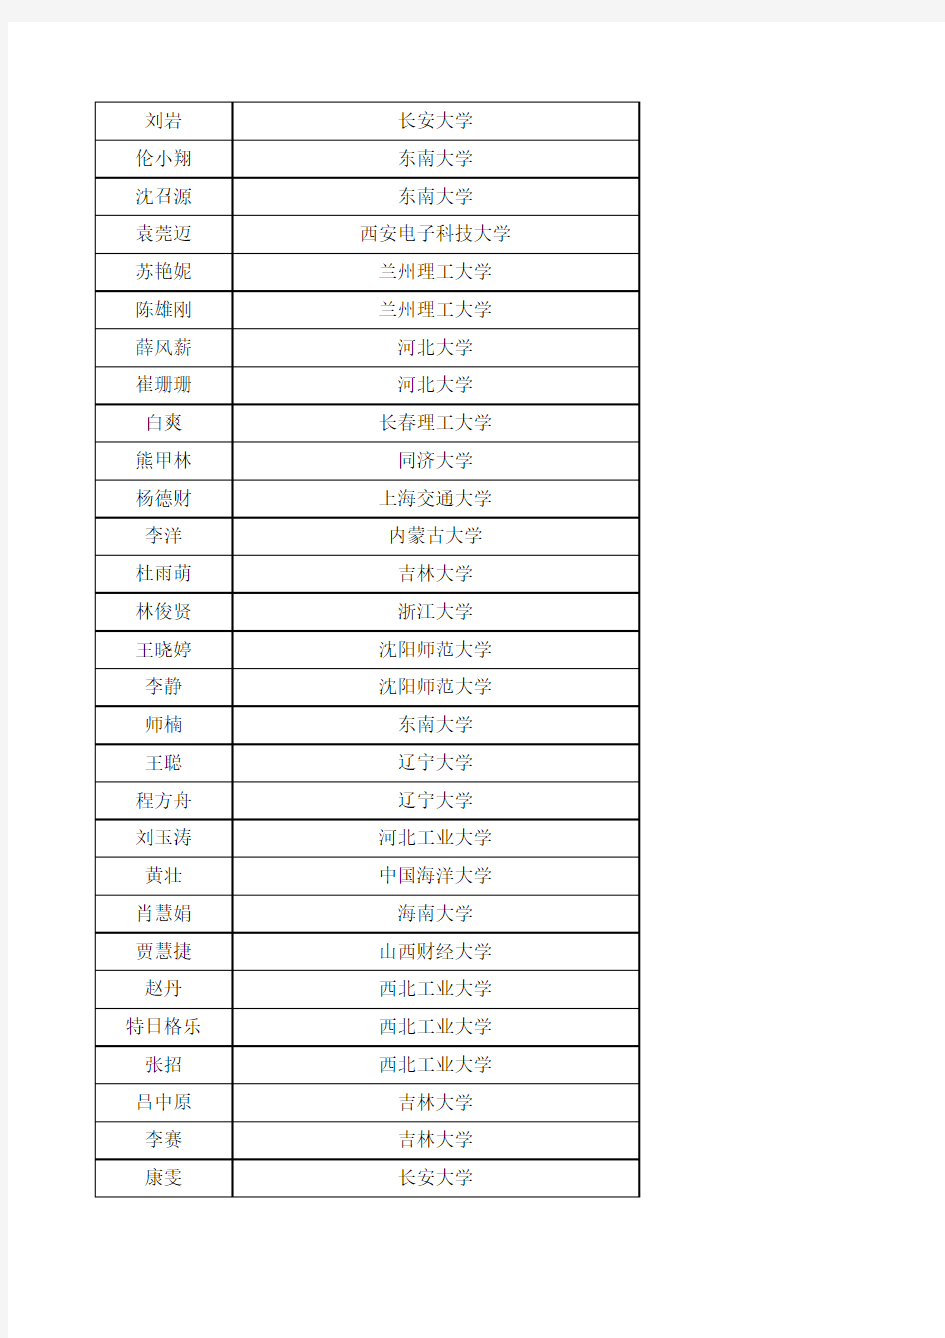 哈尔滨工业大学2014年已接收到外校推免生表名单